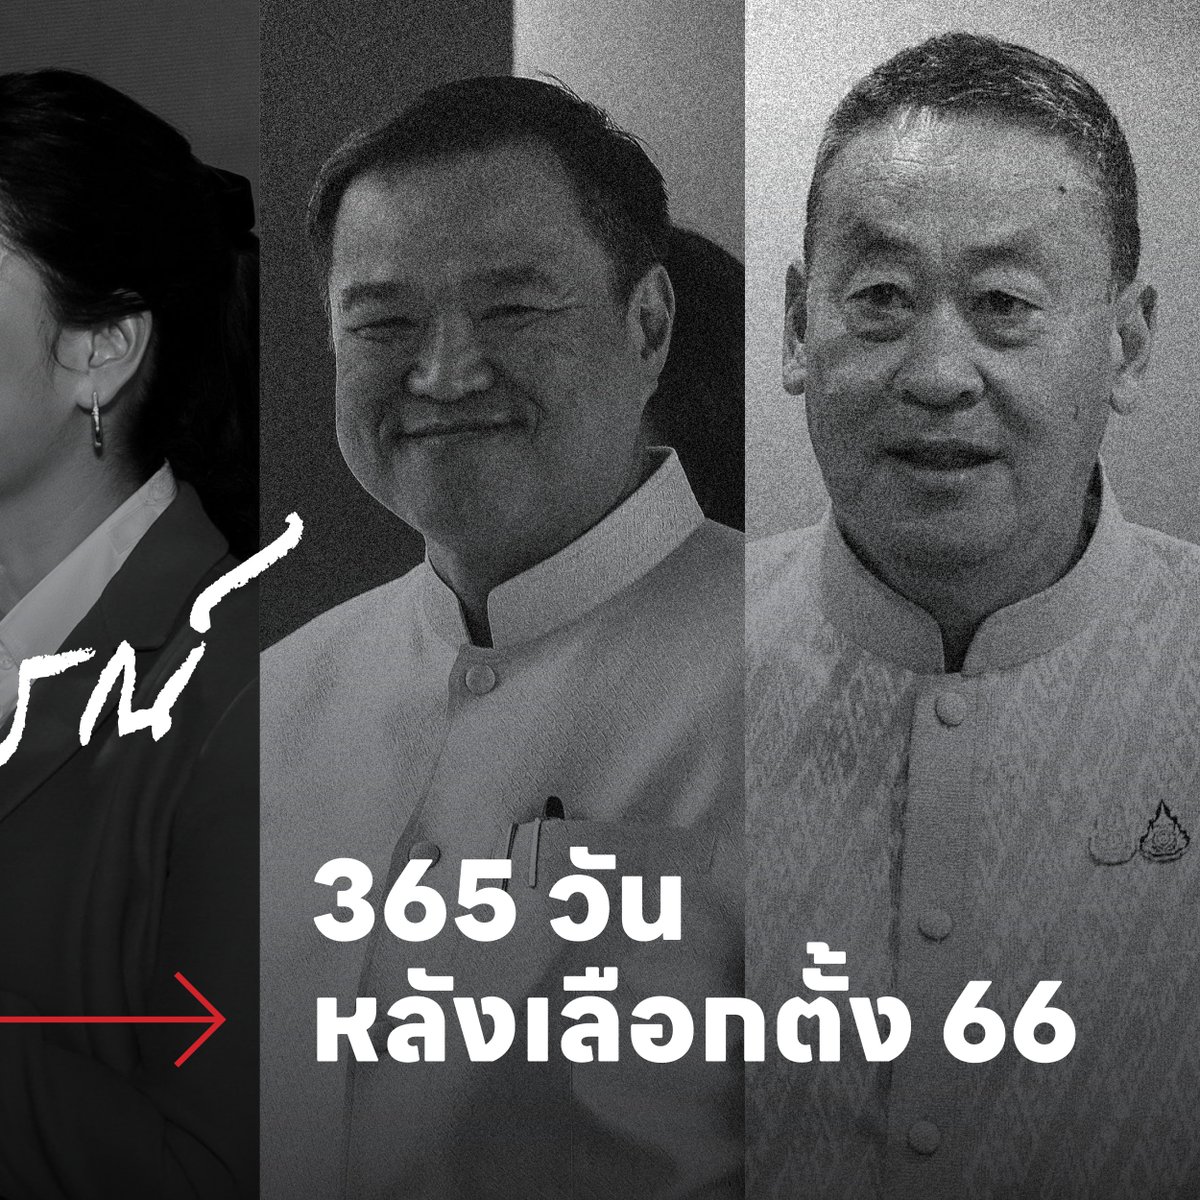 Five Things พาย้อน 5 เหตุการณ์ทางการเมืองที่สำคัญ หลังผ่านมาแล้ว 365 วัน จากการเลือกตั้งครั้งใหญ่ ว่าการเมืองไทยเปลี่ยนไปจากเดิมหรือวนอยู่ที่เดิม อ่านต่อได้ที่นี่ : plus.thairath.co.th/topic/politics… #ไทยรัฐพลัส #ThairathPlus #WeSPEAKtoSPARK #เพื่อไทย #เศรษฐา #ทักษิณ #ก้าวไกล #รัฐบาล